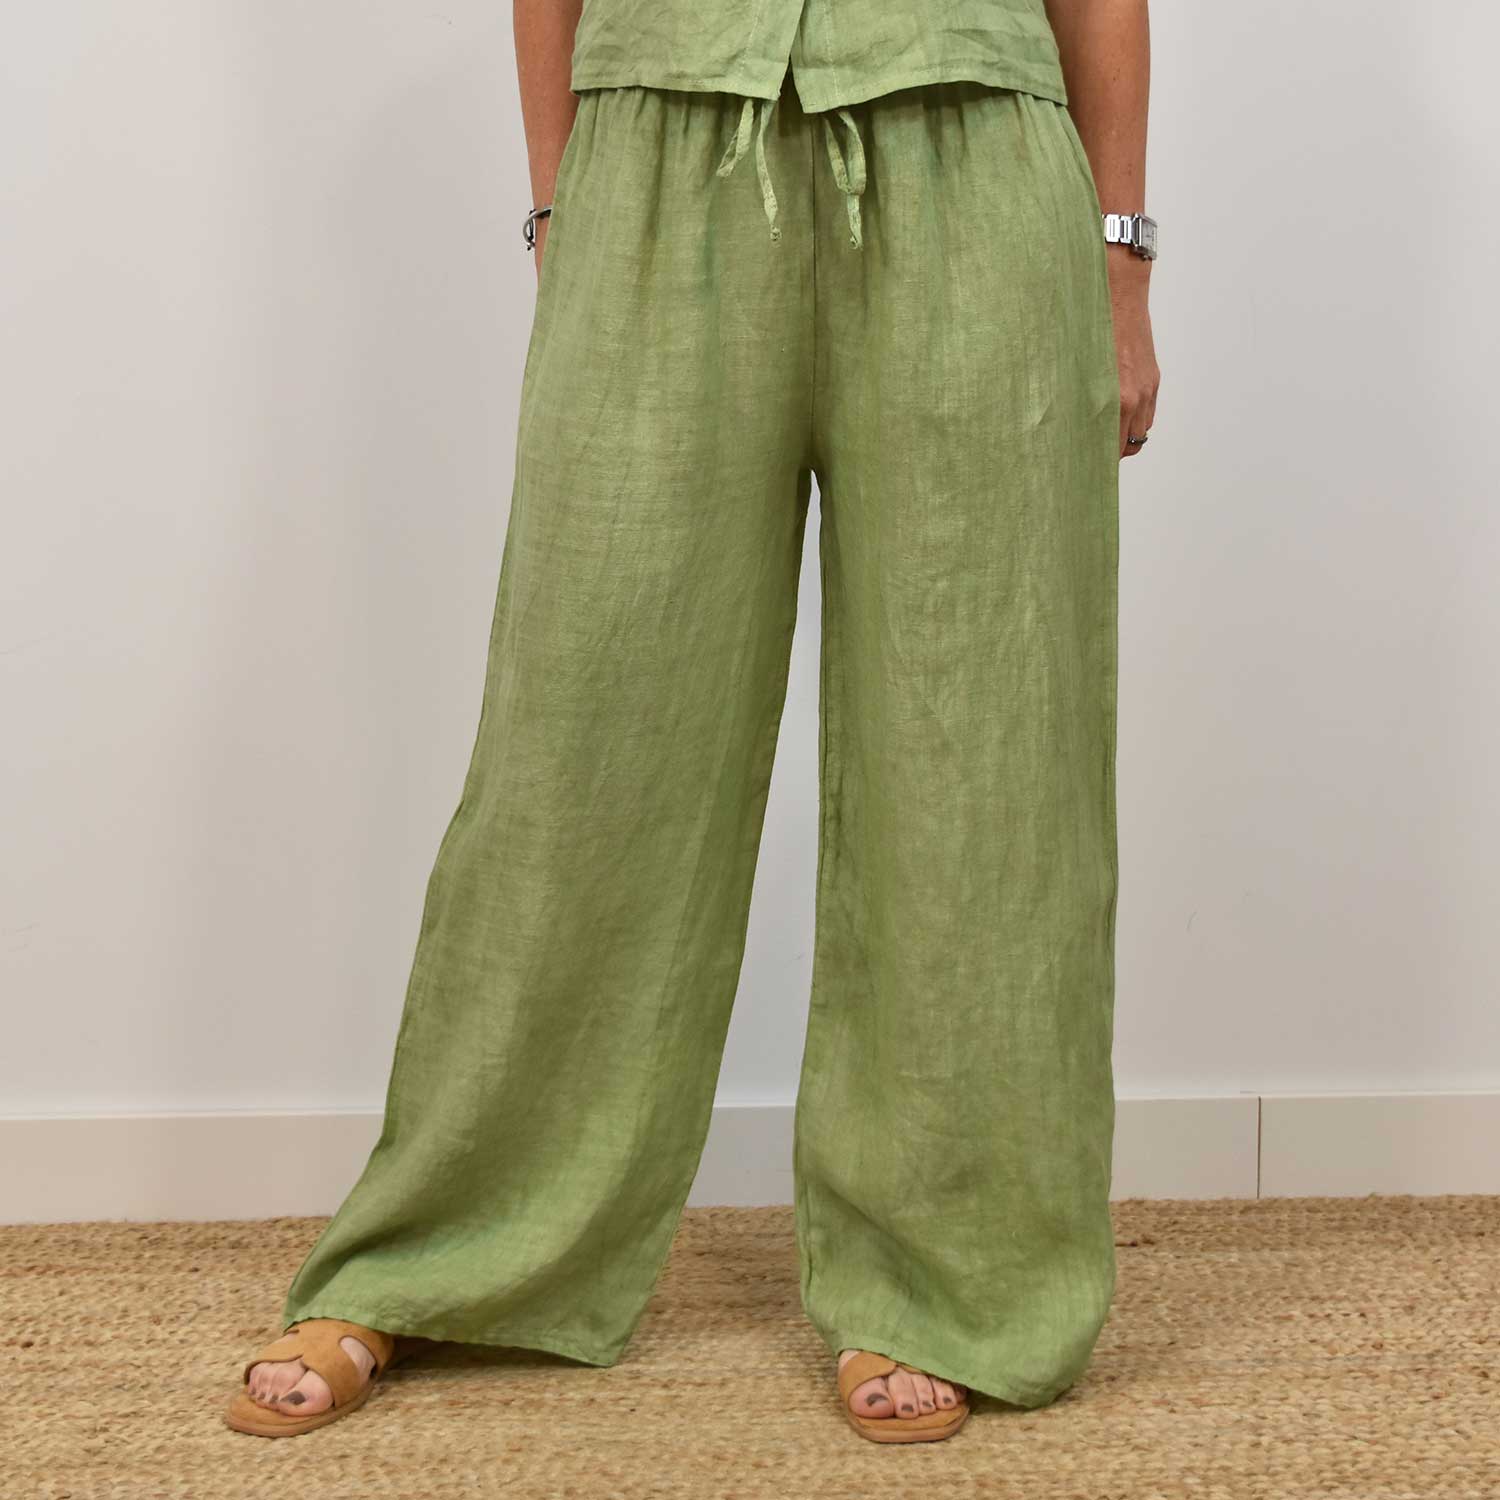 Pantalón lino recto verde